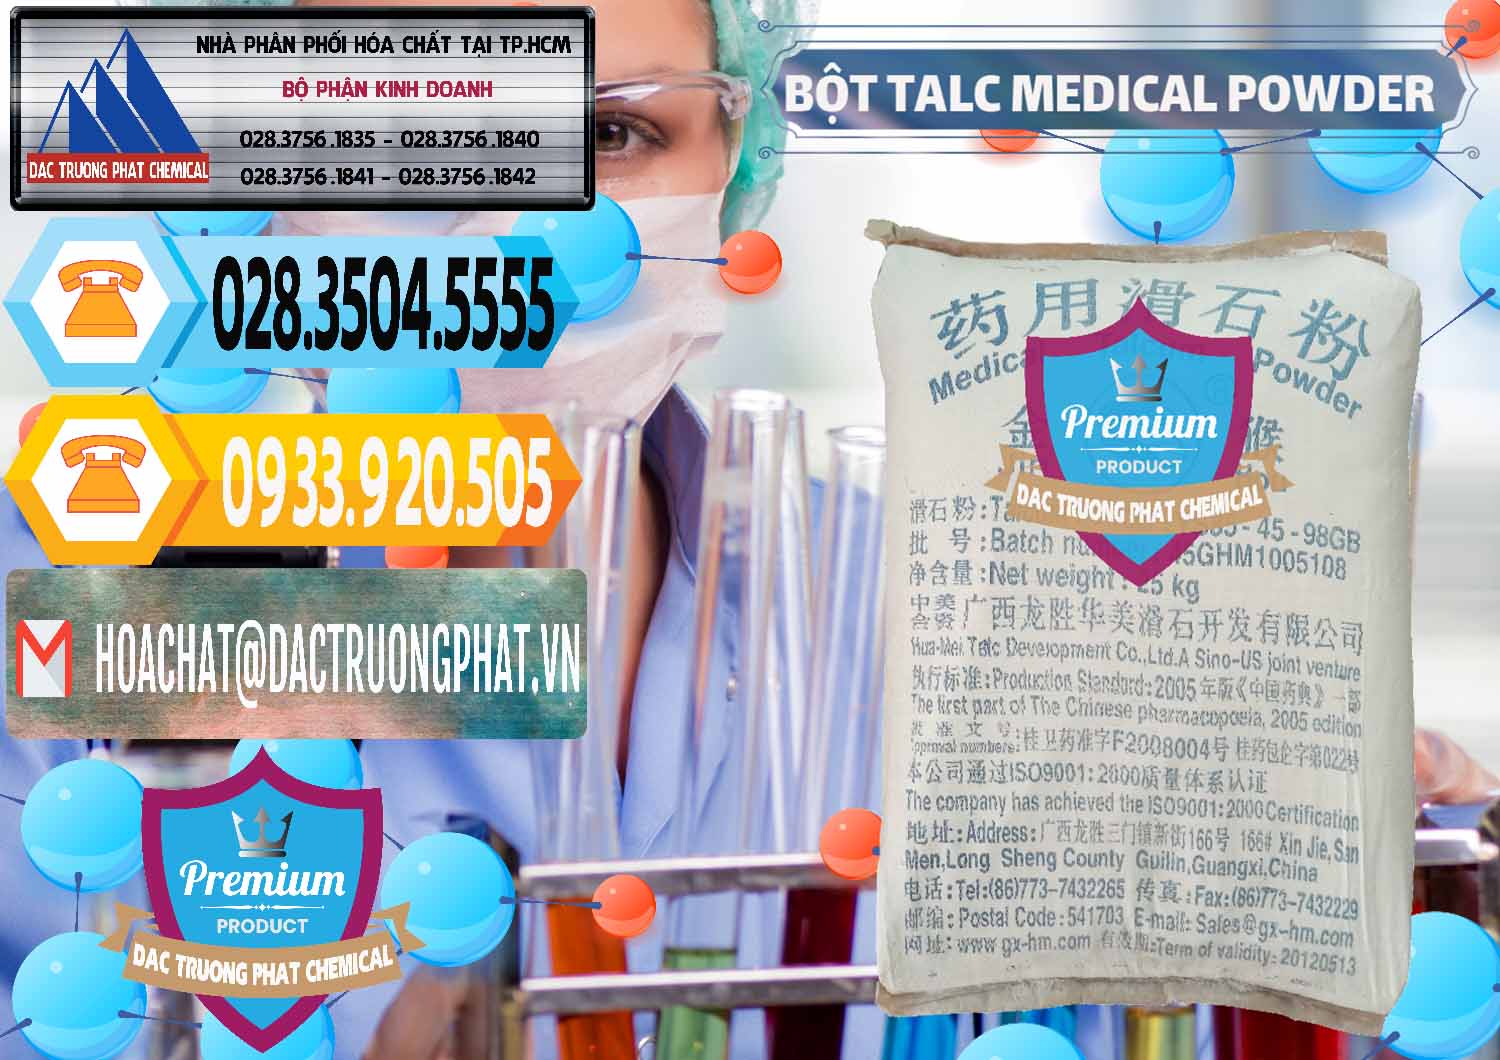 Công ty chuyên bán _ phân phối Bột Talc Medical Powder Trung Quốc China - 0036 - Chuyên bán & phân phối hóa chất tại TP.HCM - hoachattayrua.net